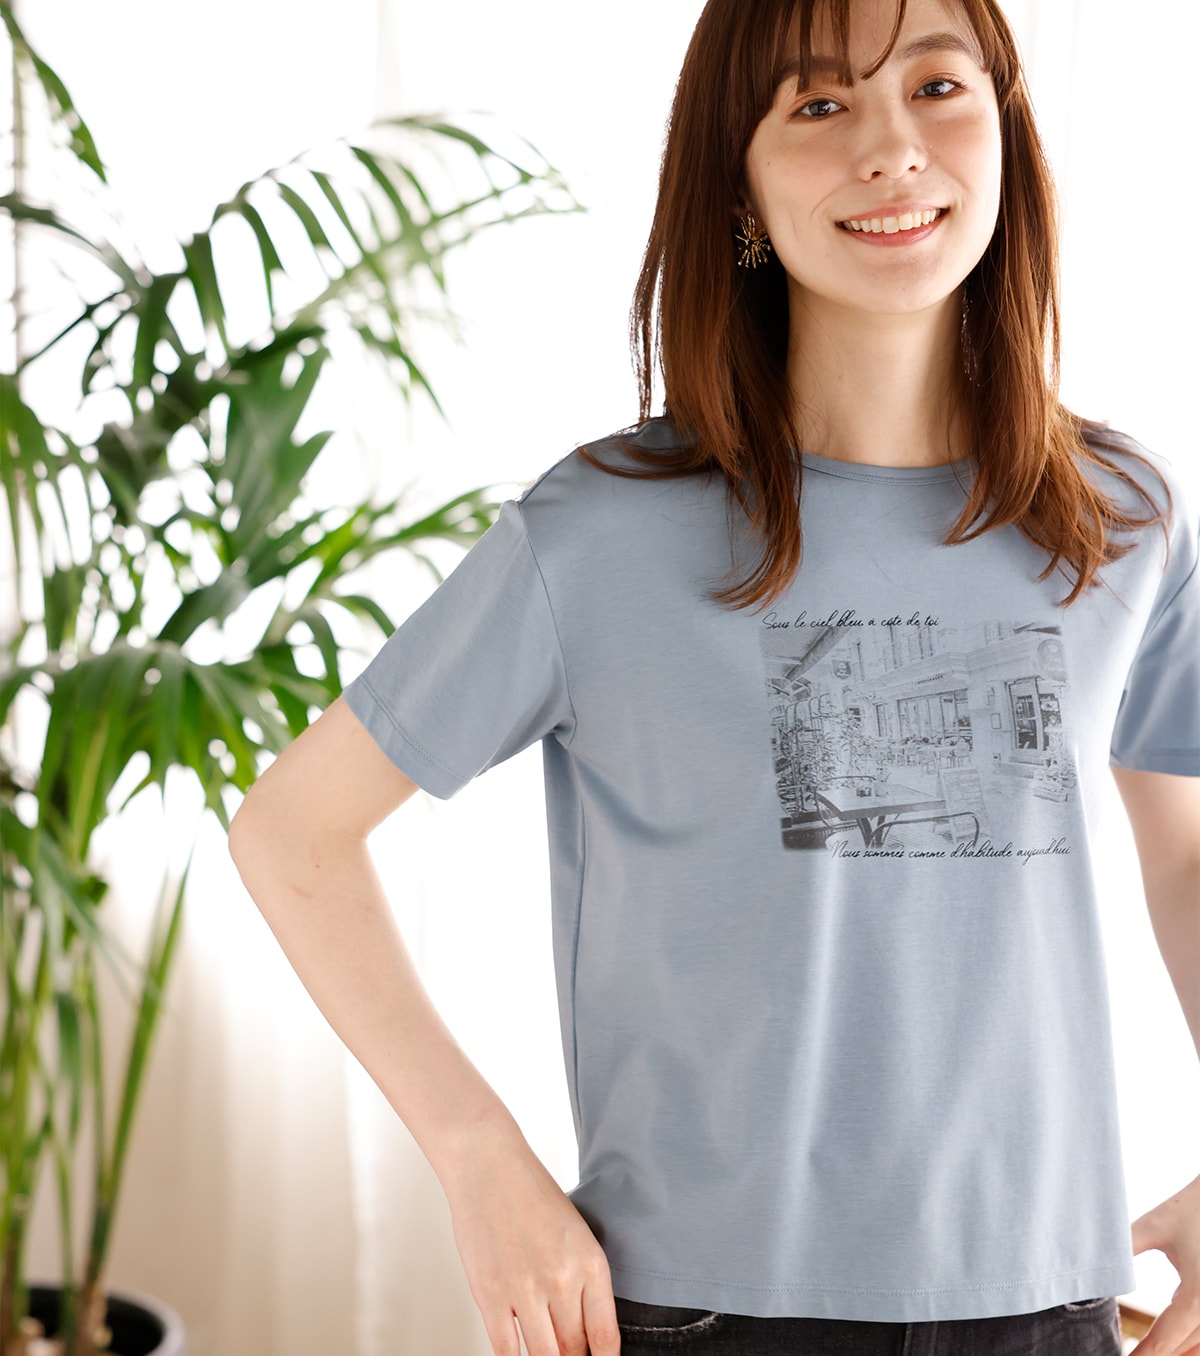 ひや楽フォトプリントTシャツ・ブルーを着用している女性の写真